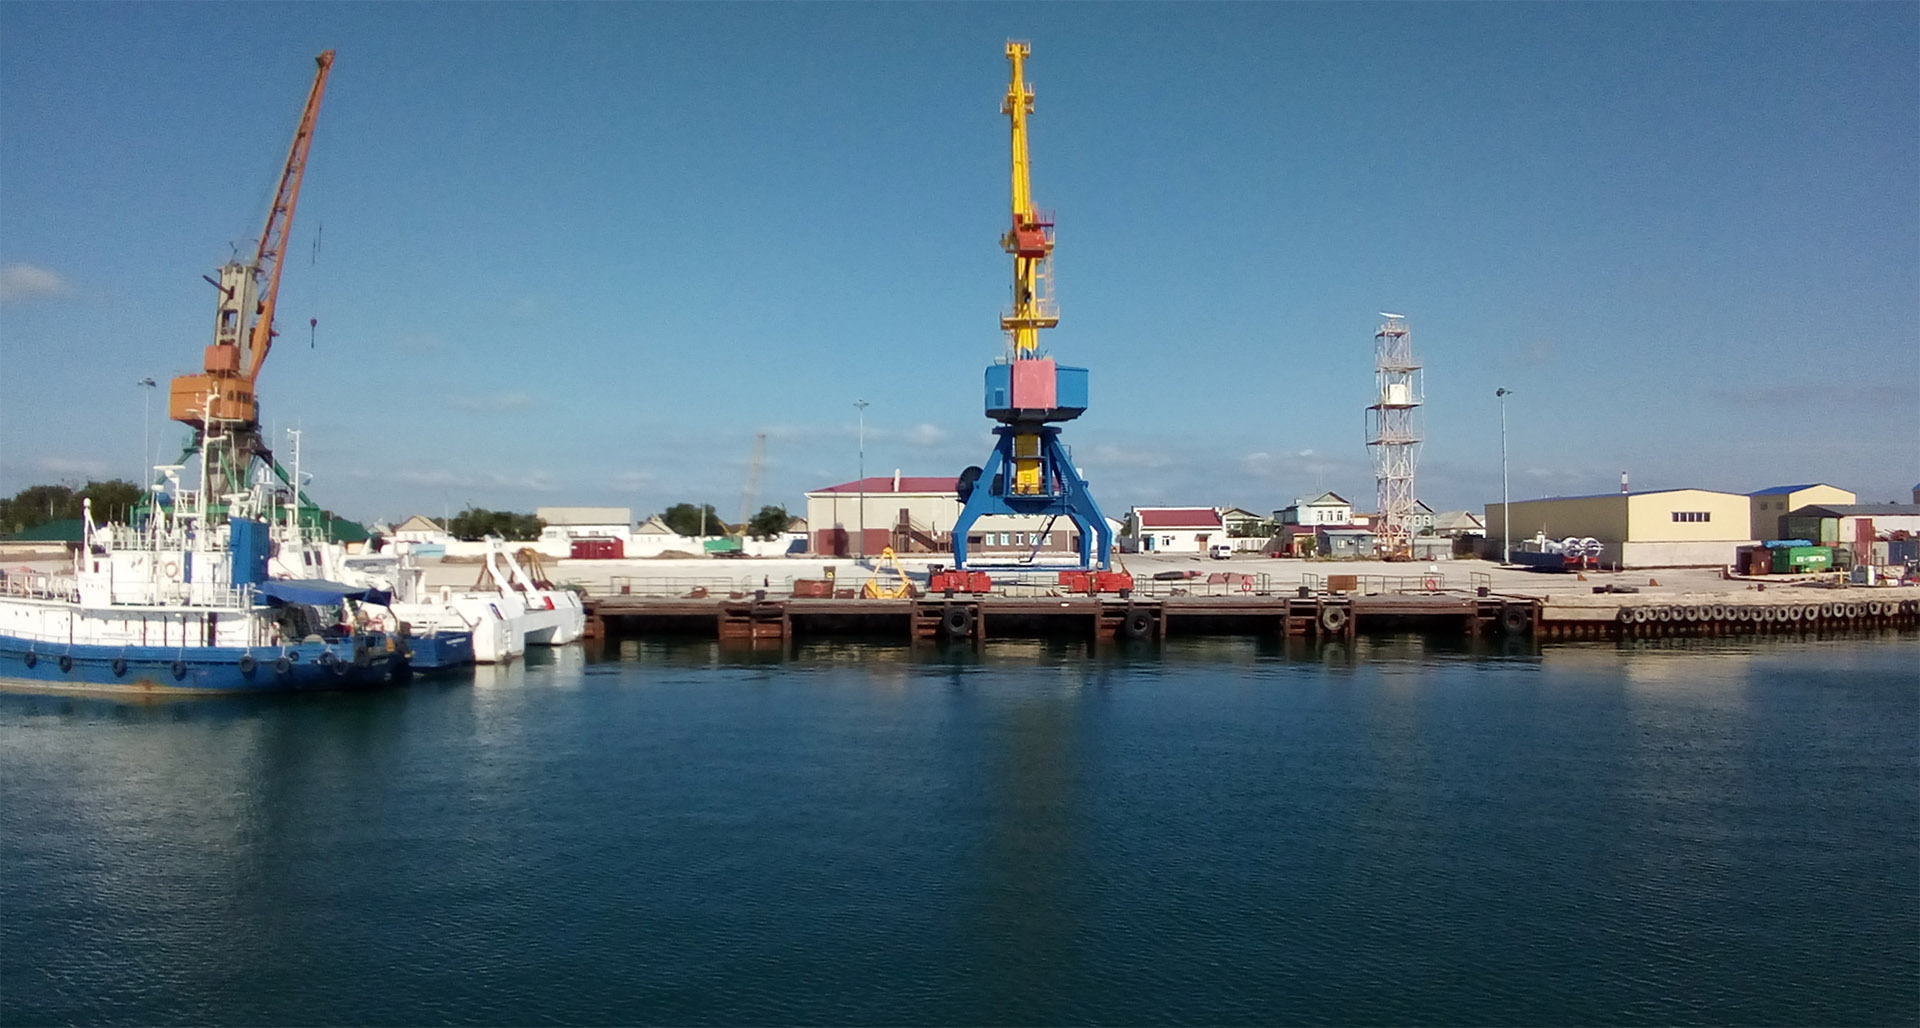 Сервис по цифровизации услуг системы управления движением судов в порту Баутино